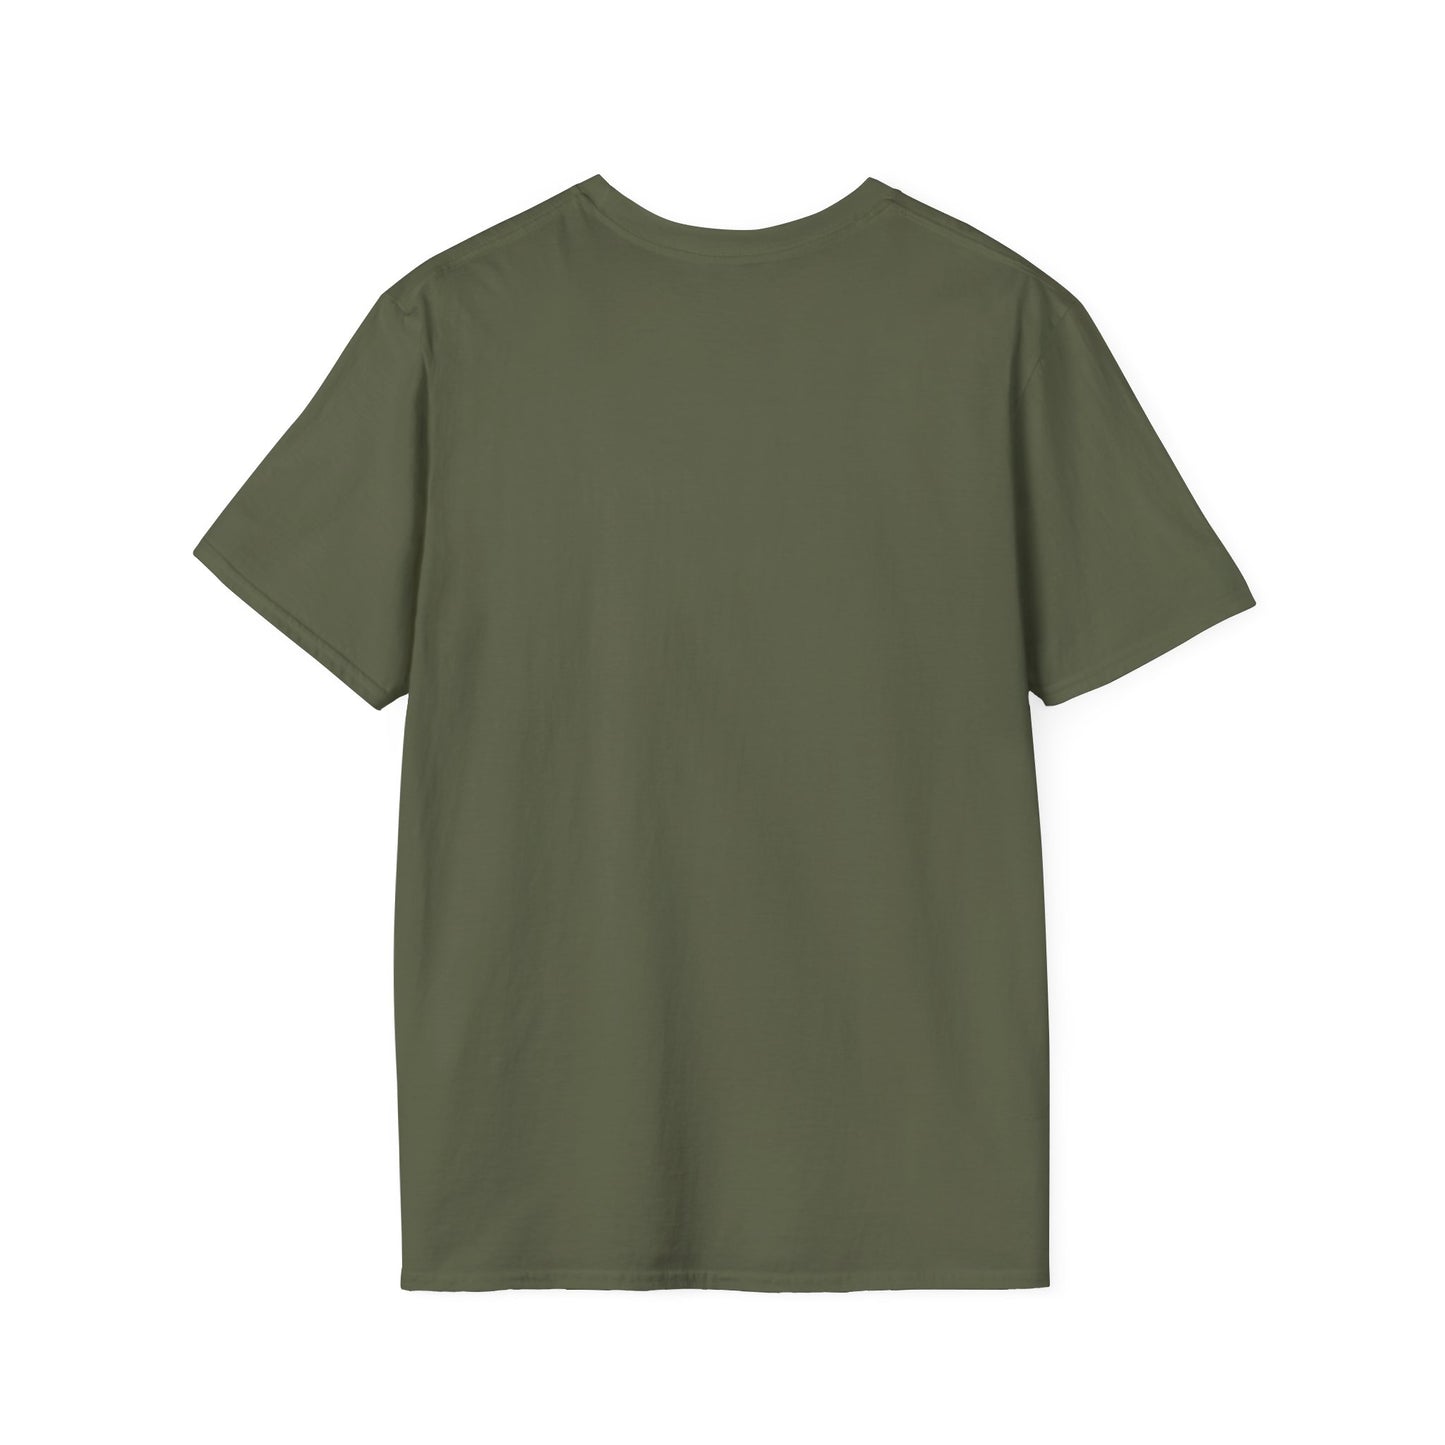 Pawsome Unisex Softstyle T-Shirt